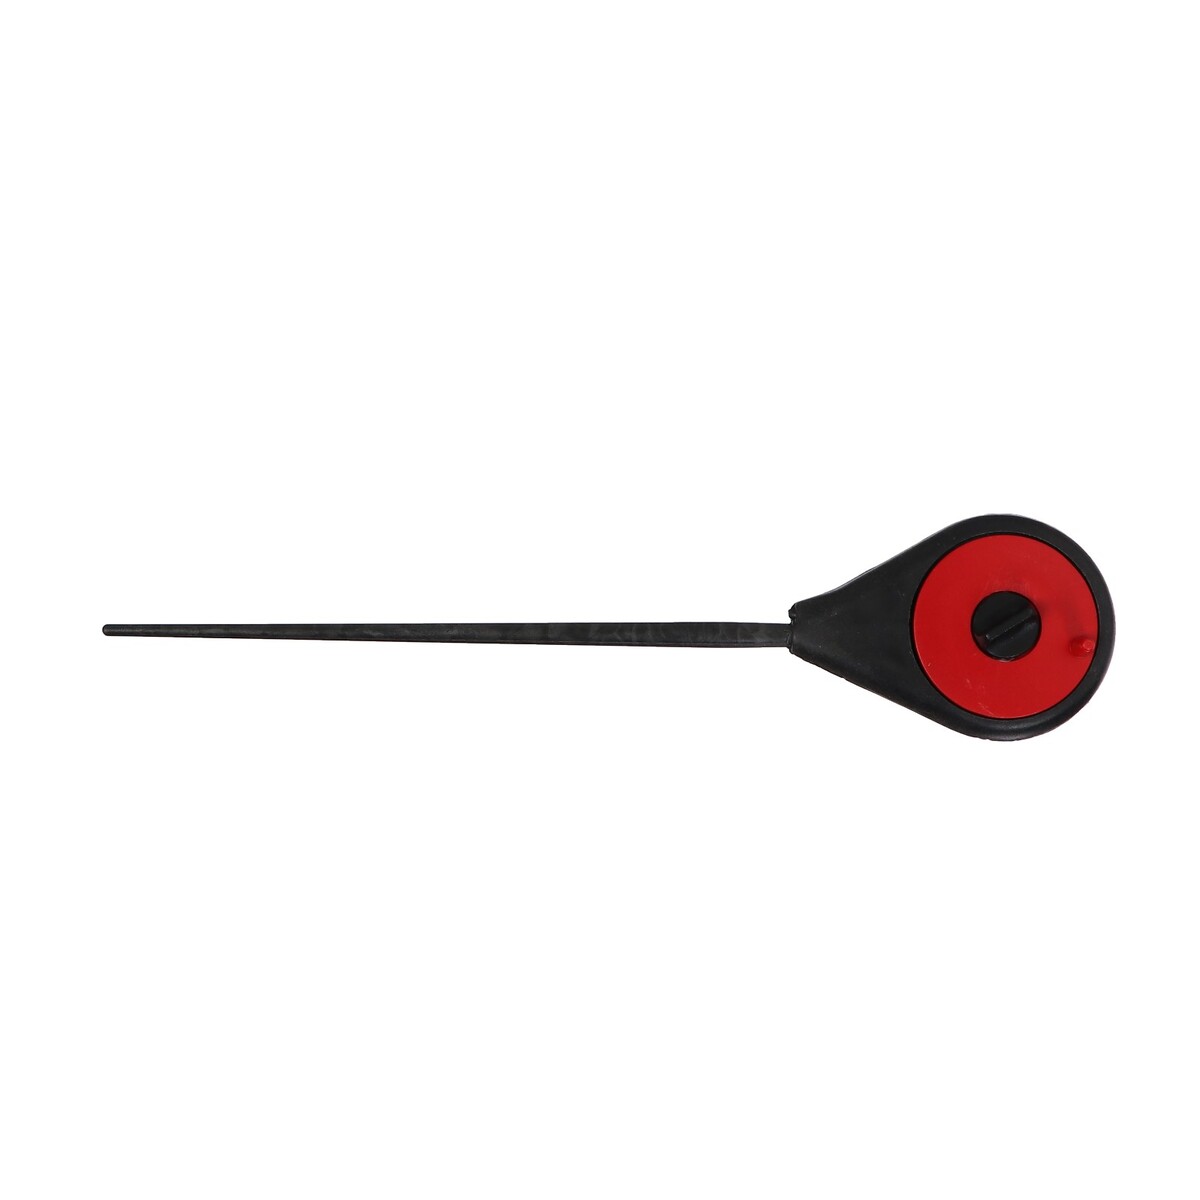 Удочка зимняя балалайка, цвет черный красный, hfb-18 удочка зимняя ручка неопрен диаметр катушки 9 5 см hfb 1m